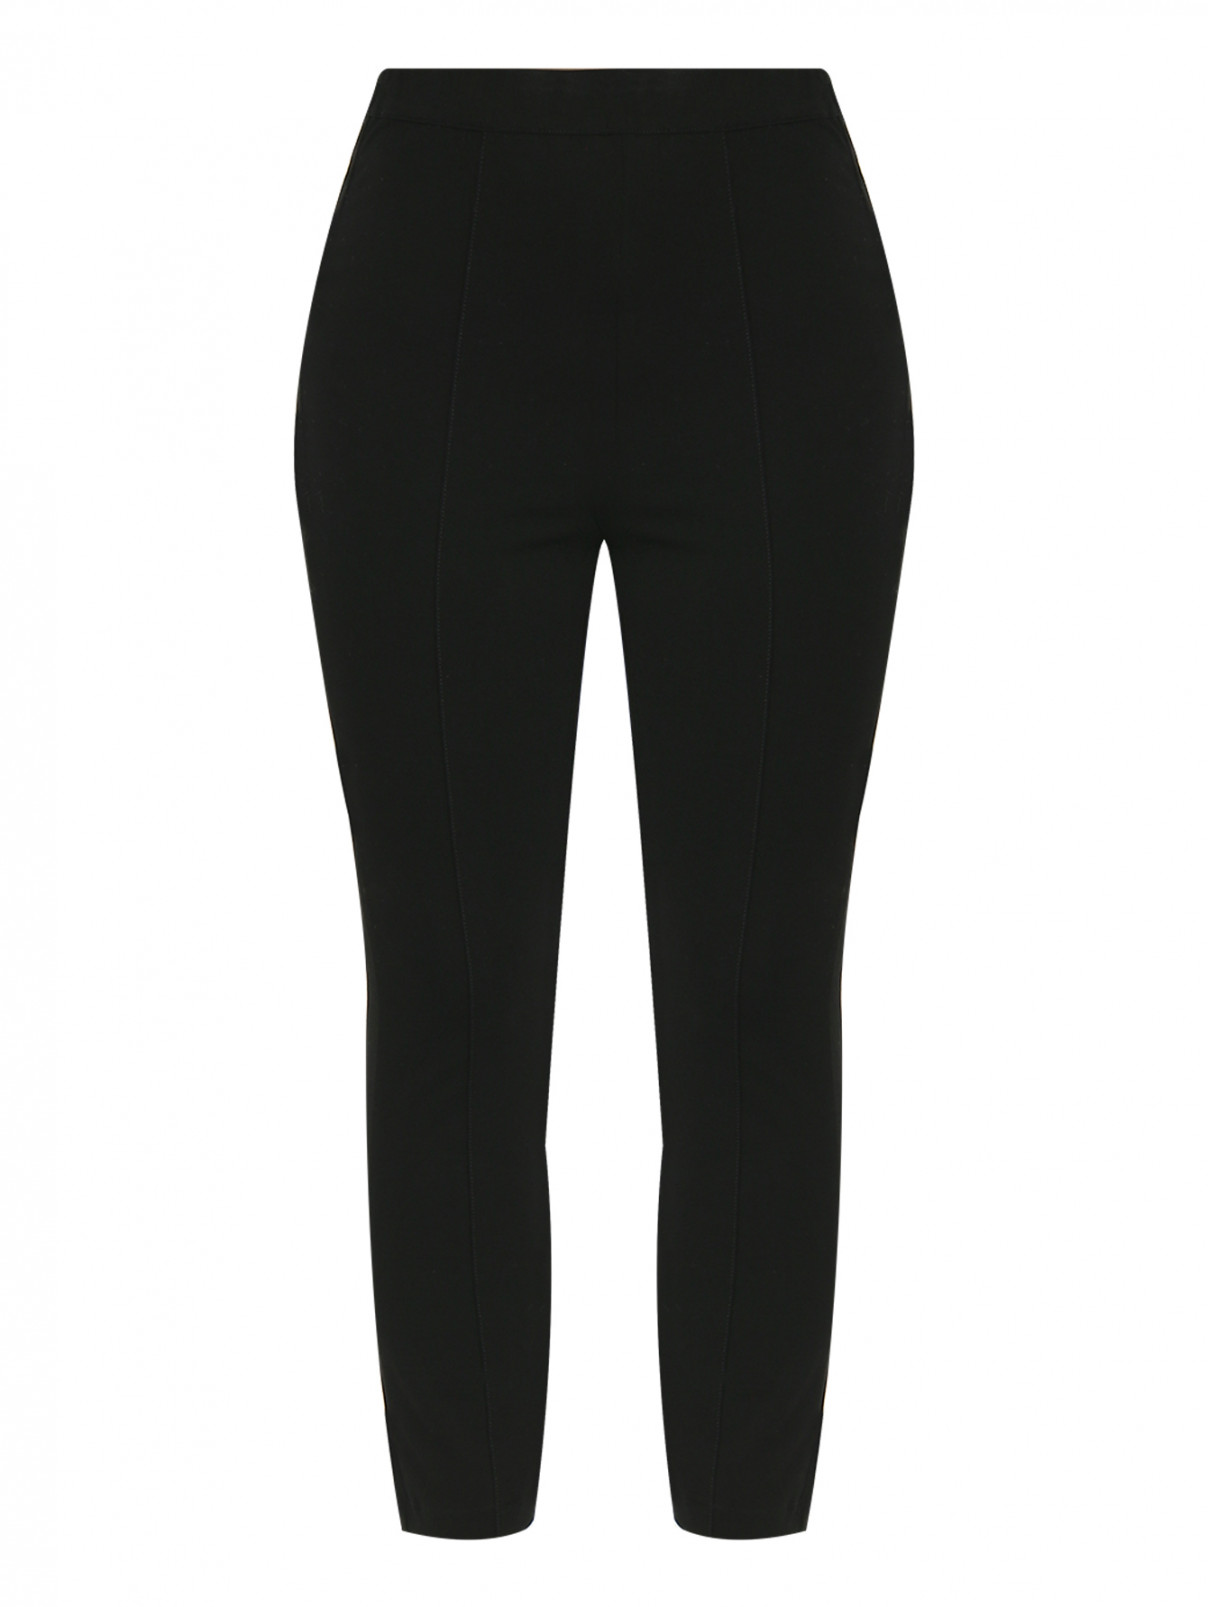 Трикотажные брюки на резинке Marina Rinaldi  –  Общий вид  – Цвет:  Черный